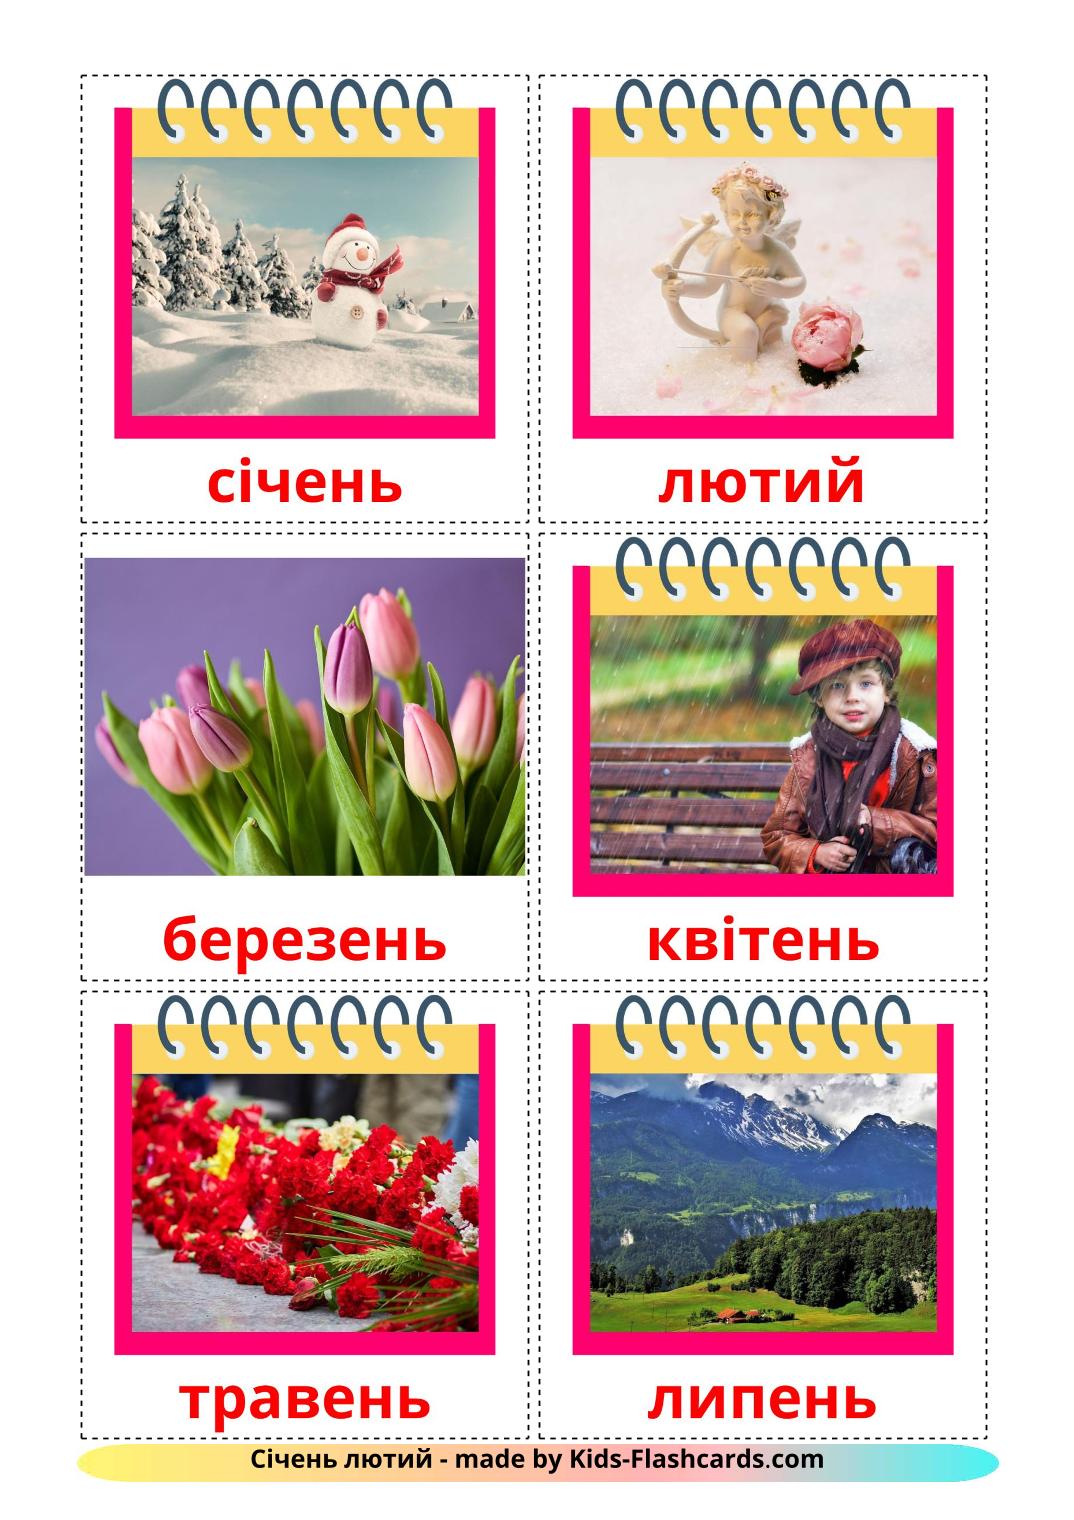 Meses del año - 12 fichas de ucraniano para imprimir gratis 